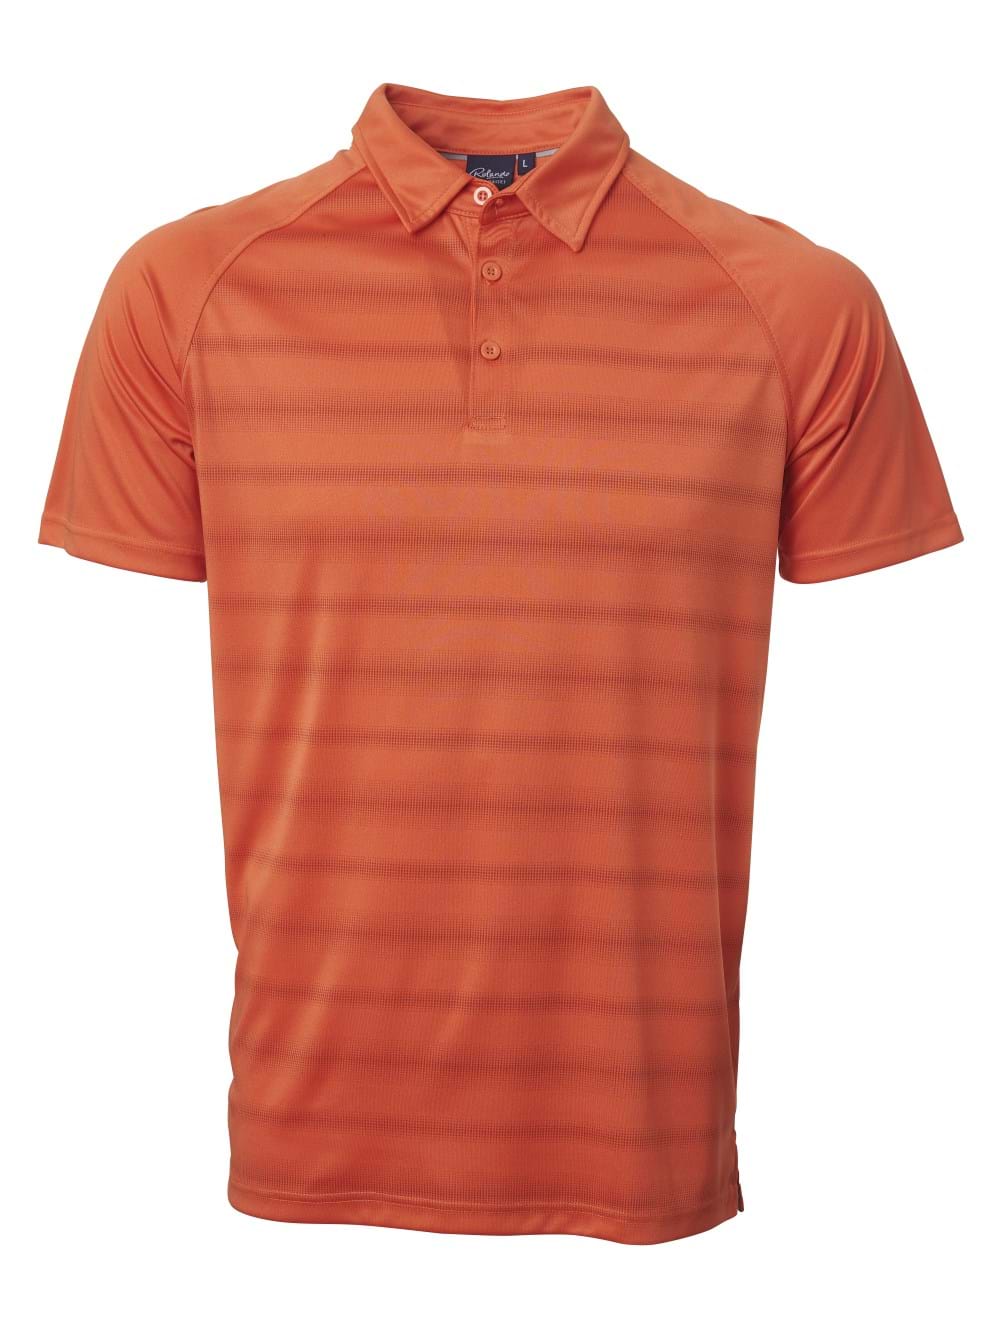 Pivot Golfer - Orange / M